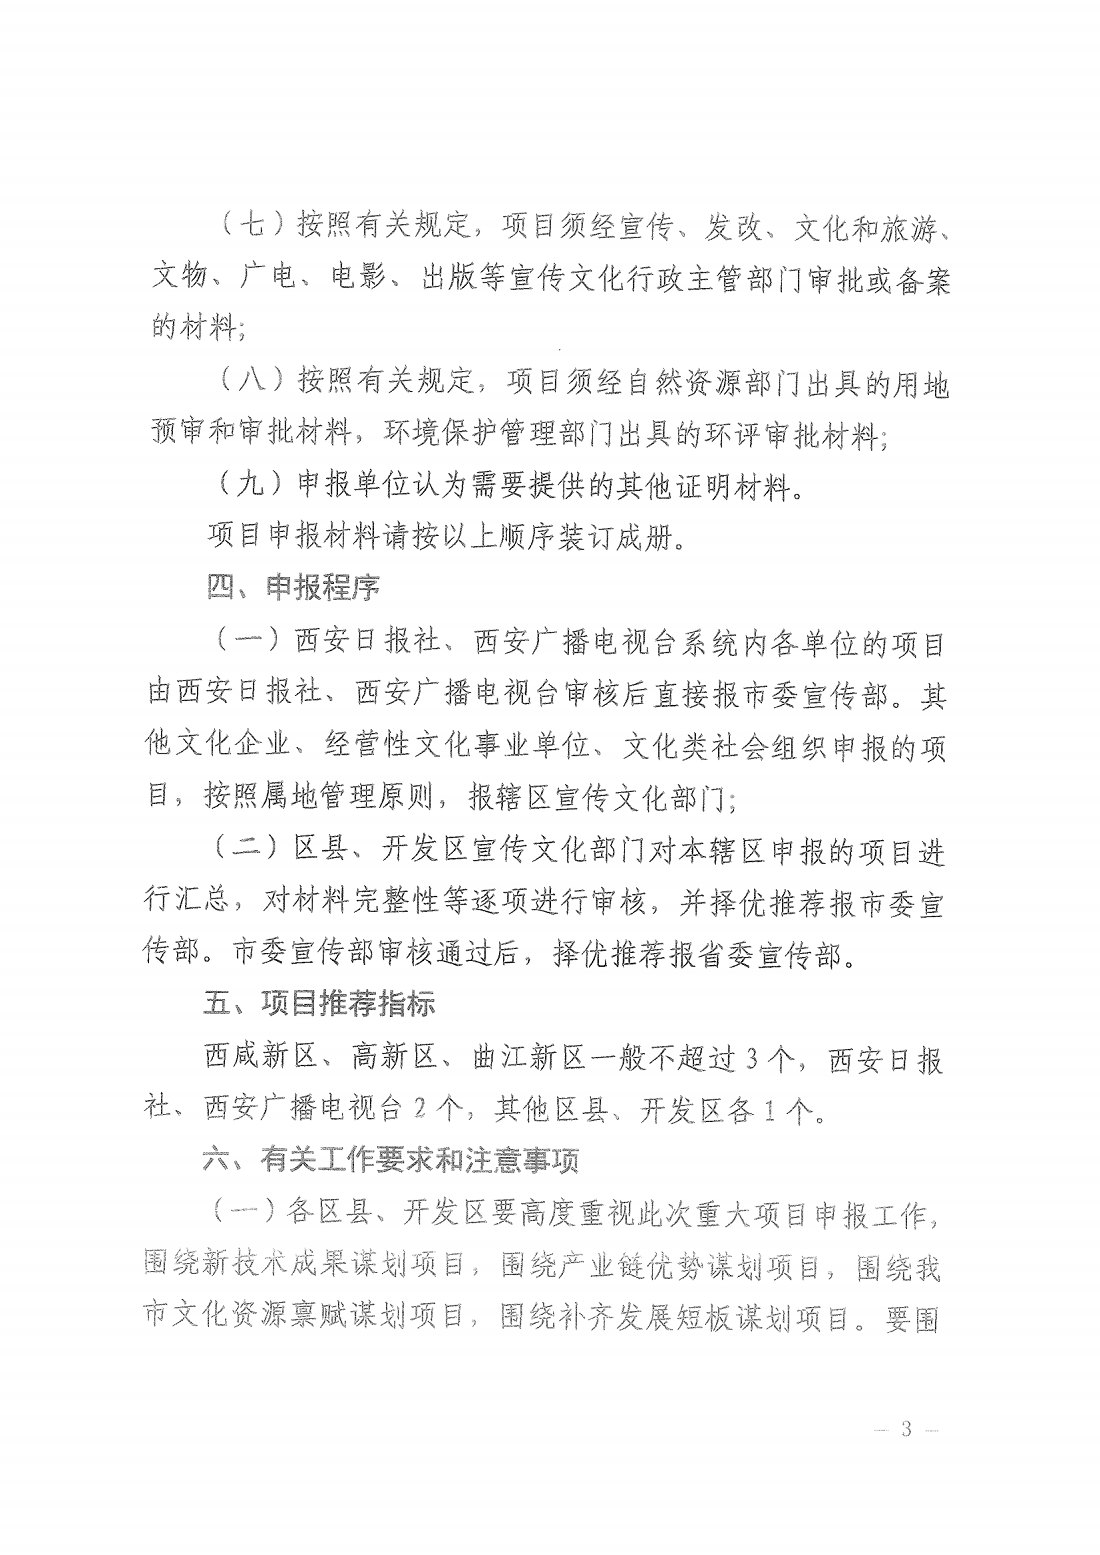 关于开展2022年陕西省重大文化产业项目申报工作的通知_02.png